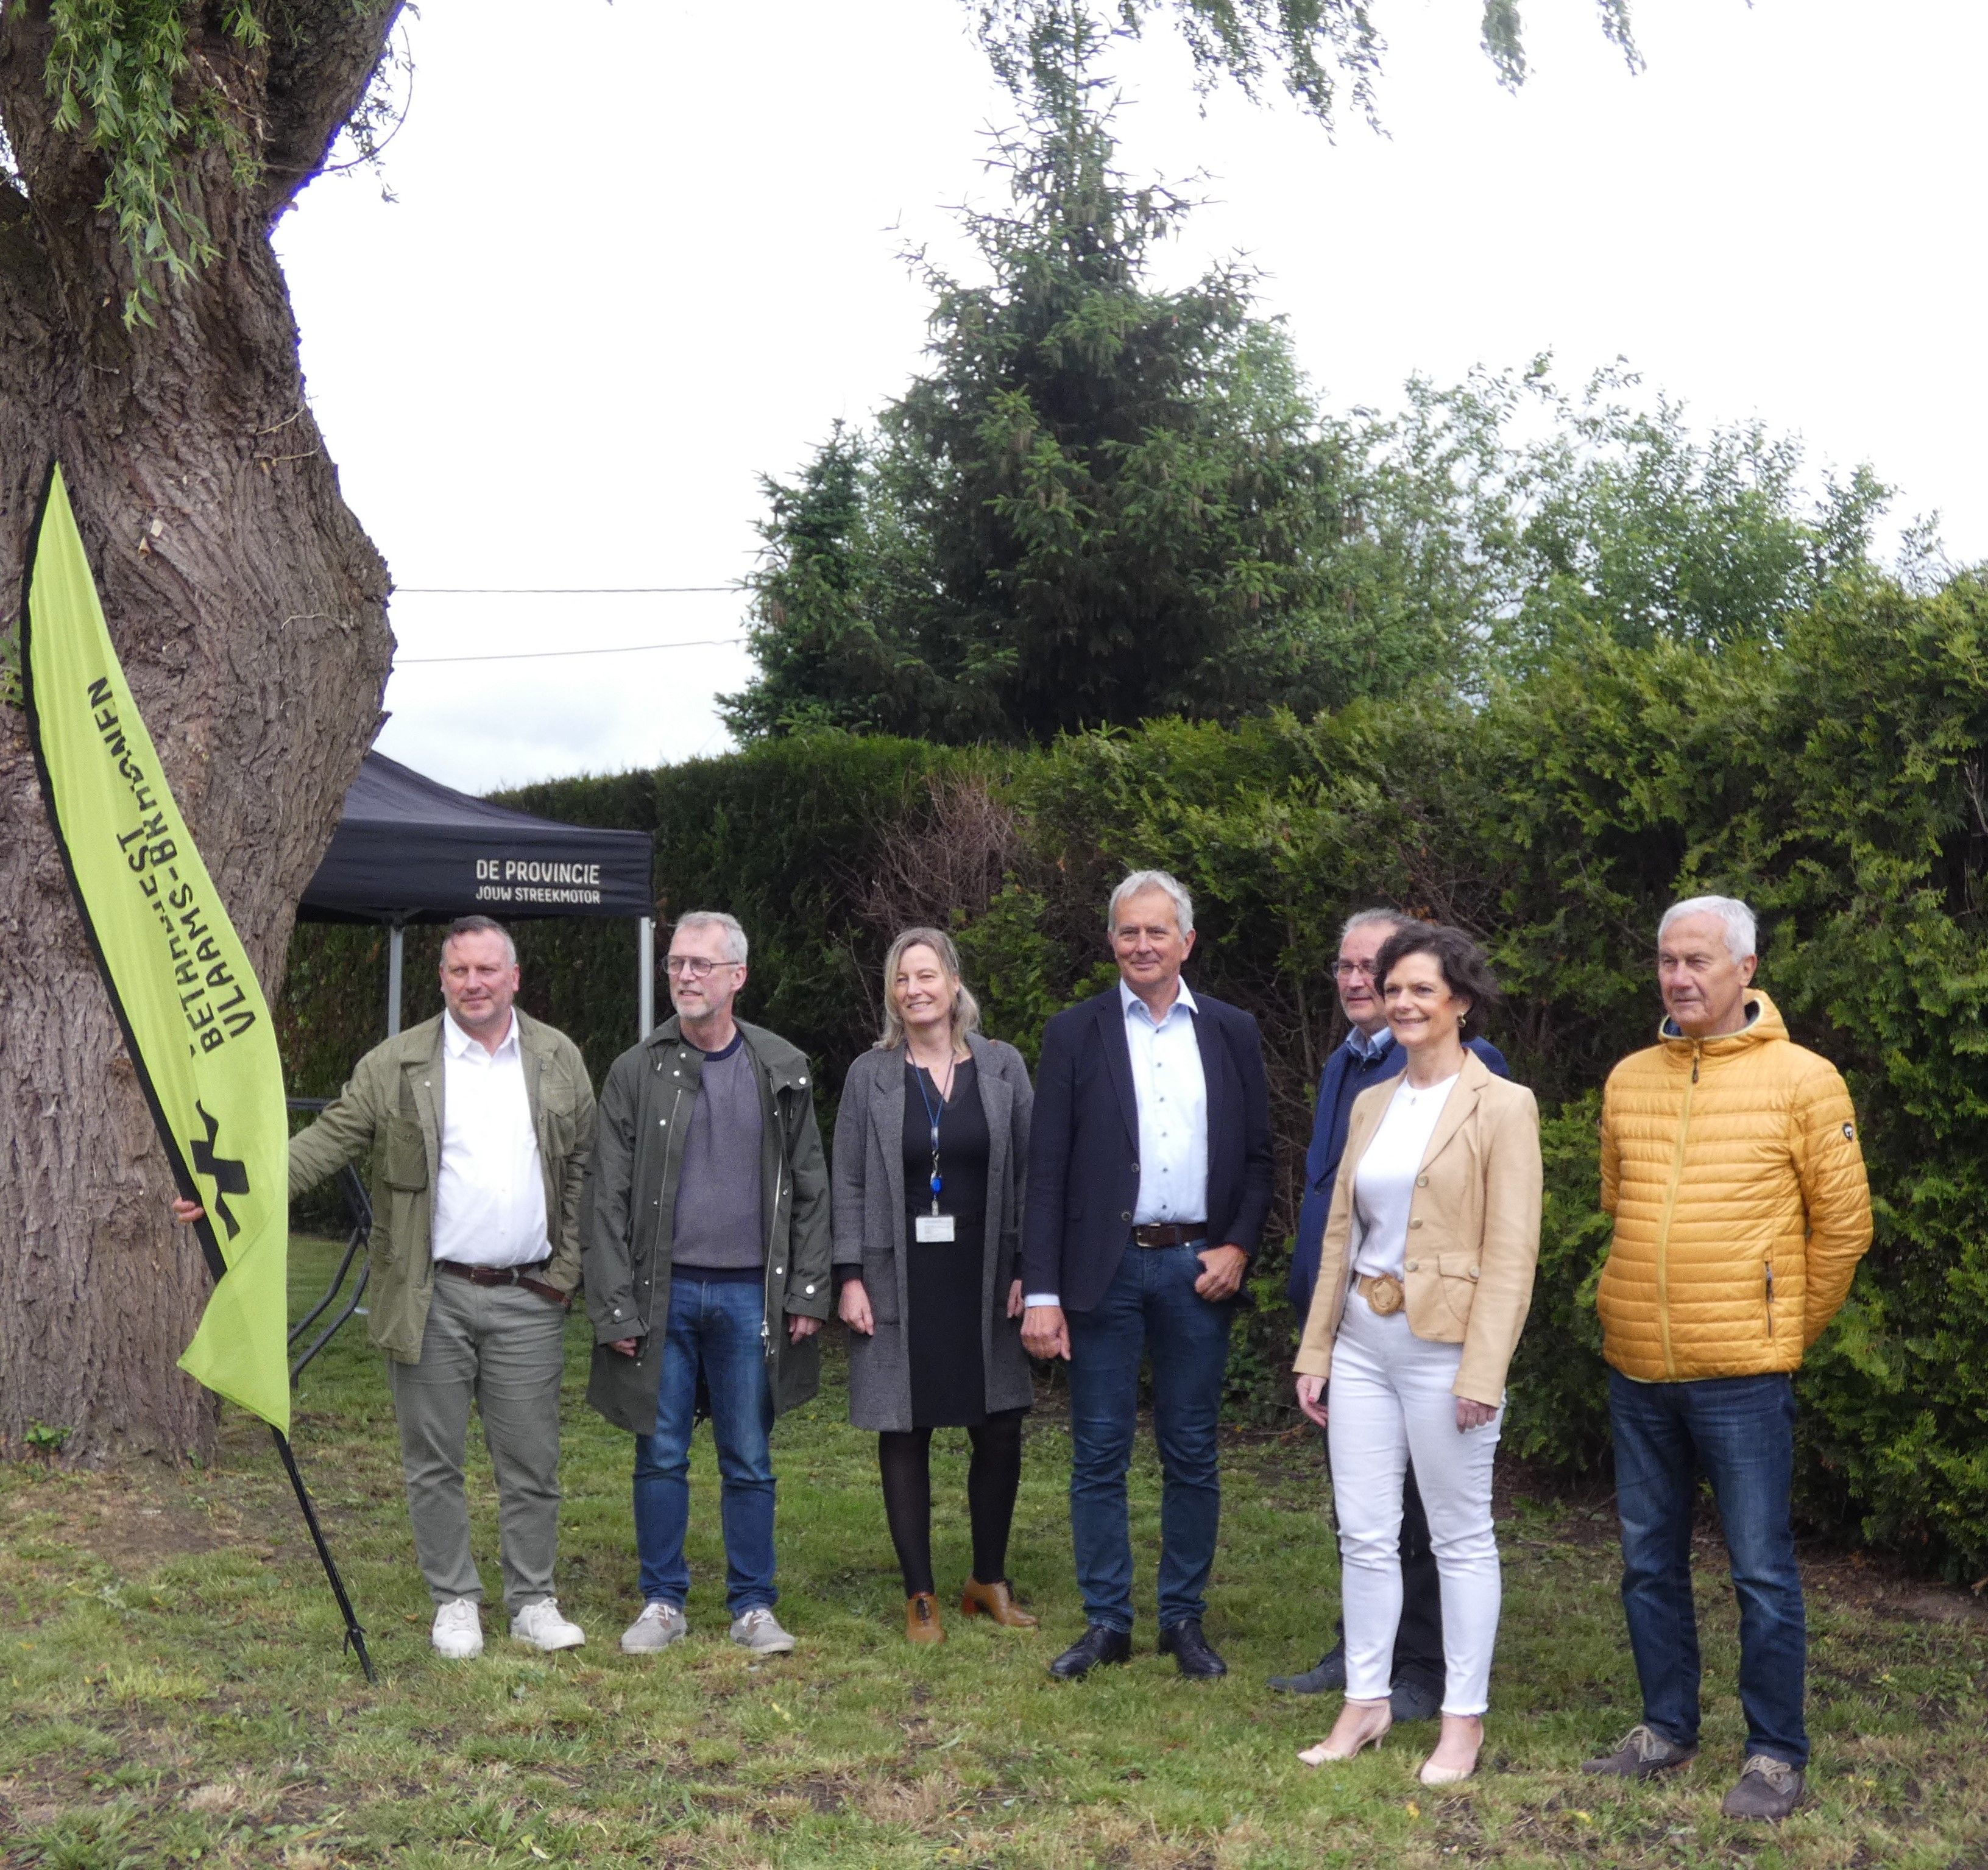 Op 29 mei werd het bouwproject aan de Oxdonkstraat voorgesteld door vertegenwoordigers van Vlabinvest, de provincie Vlaams-Brabant en de gemeente Kapelle-op-den-Bos.